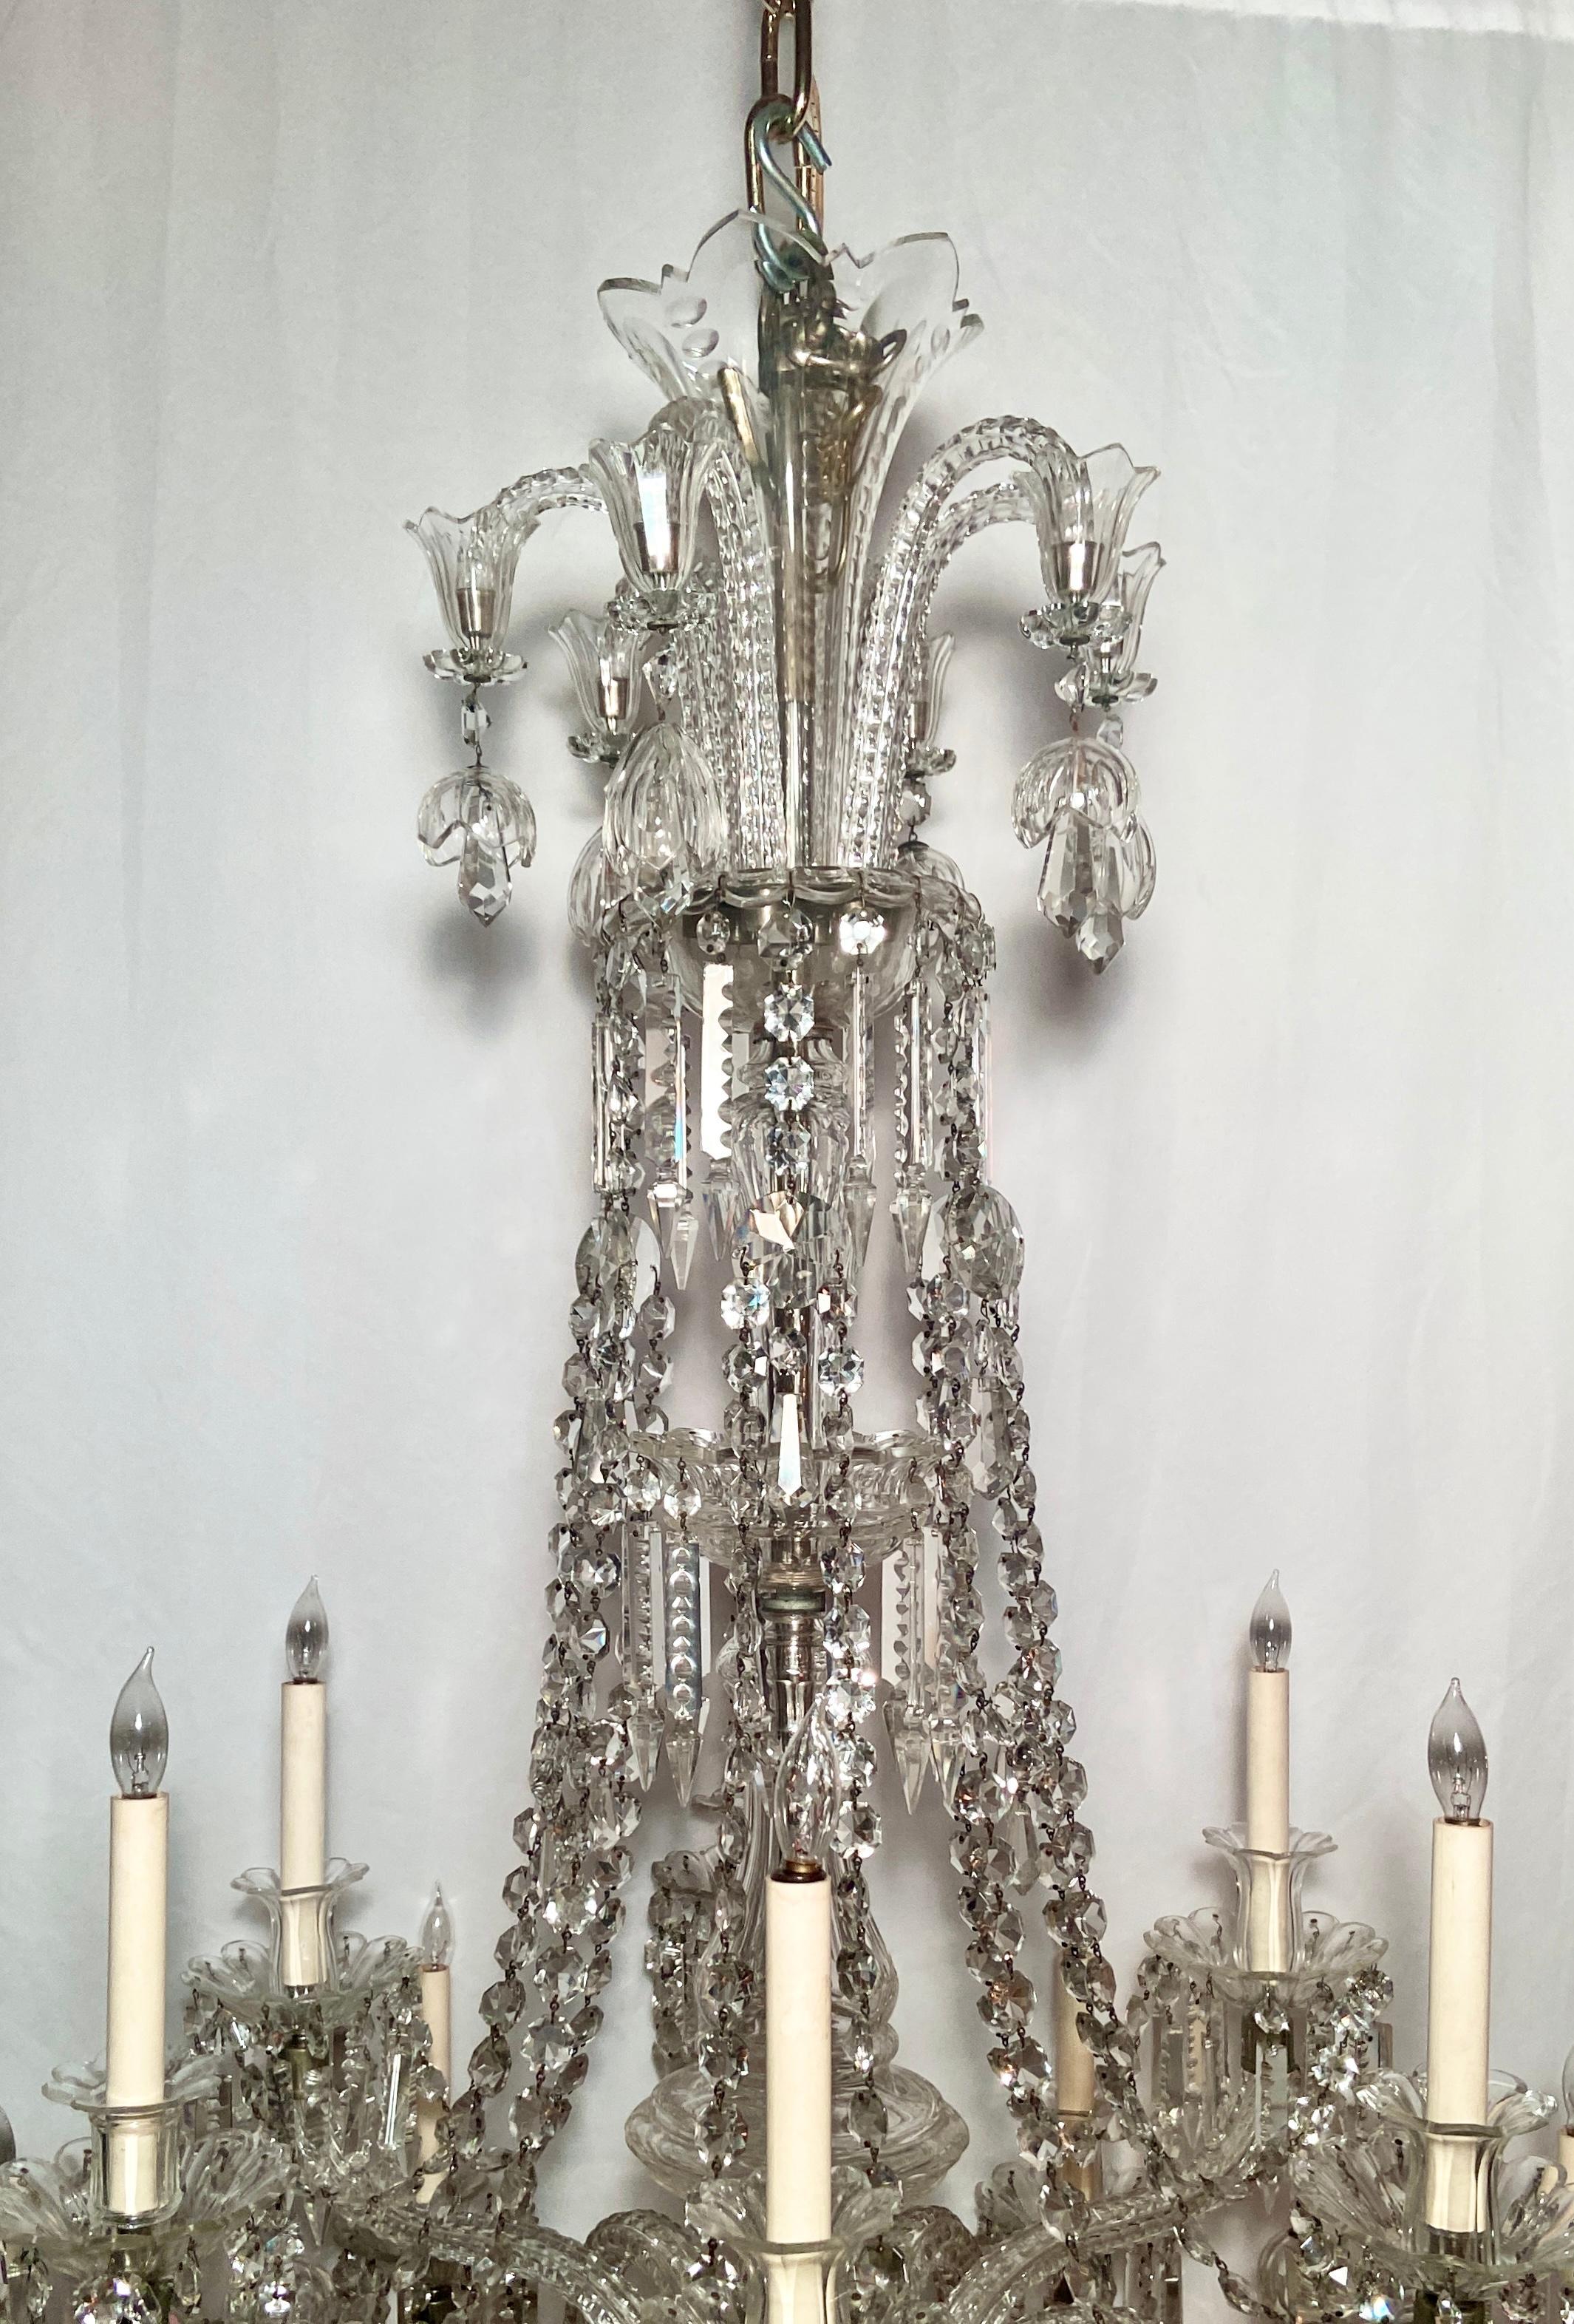 Magnifique lustre ancien du 19e siècle en cristal de plomb.
La tige et les bras, entièrement en cristal, sont lourdement drapés de fabuleux prismes et perles en cristal taillé.